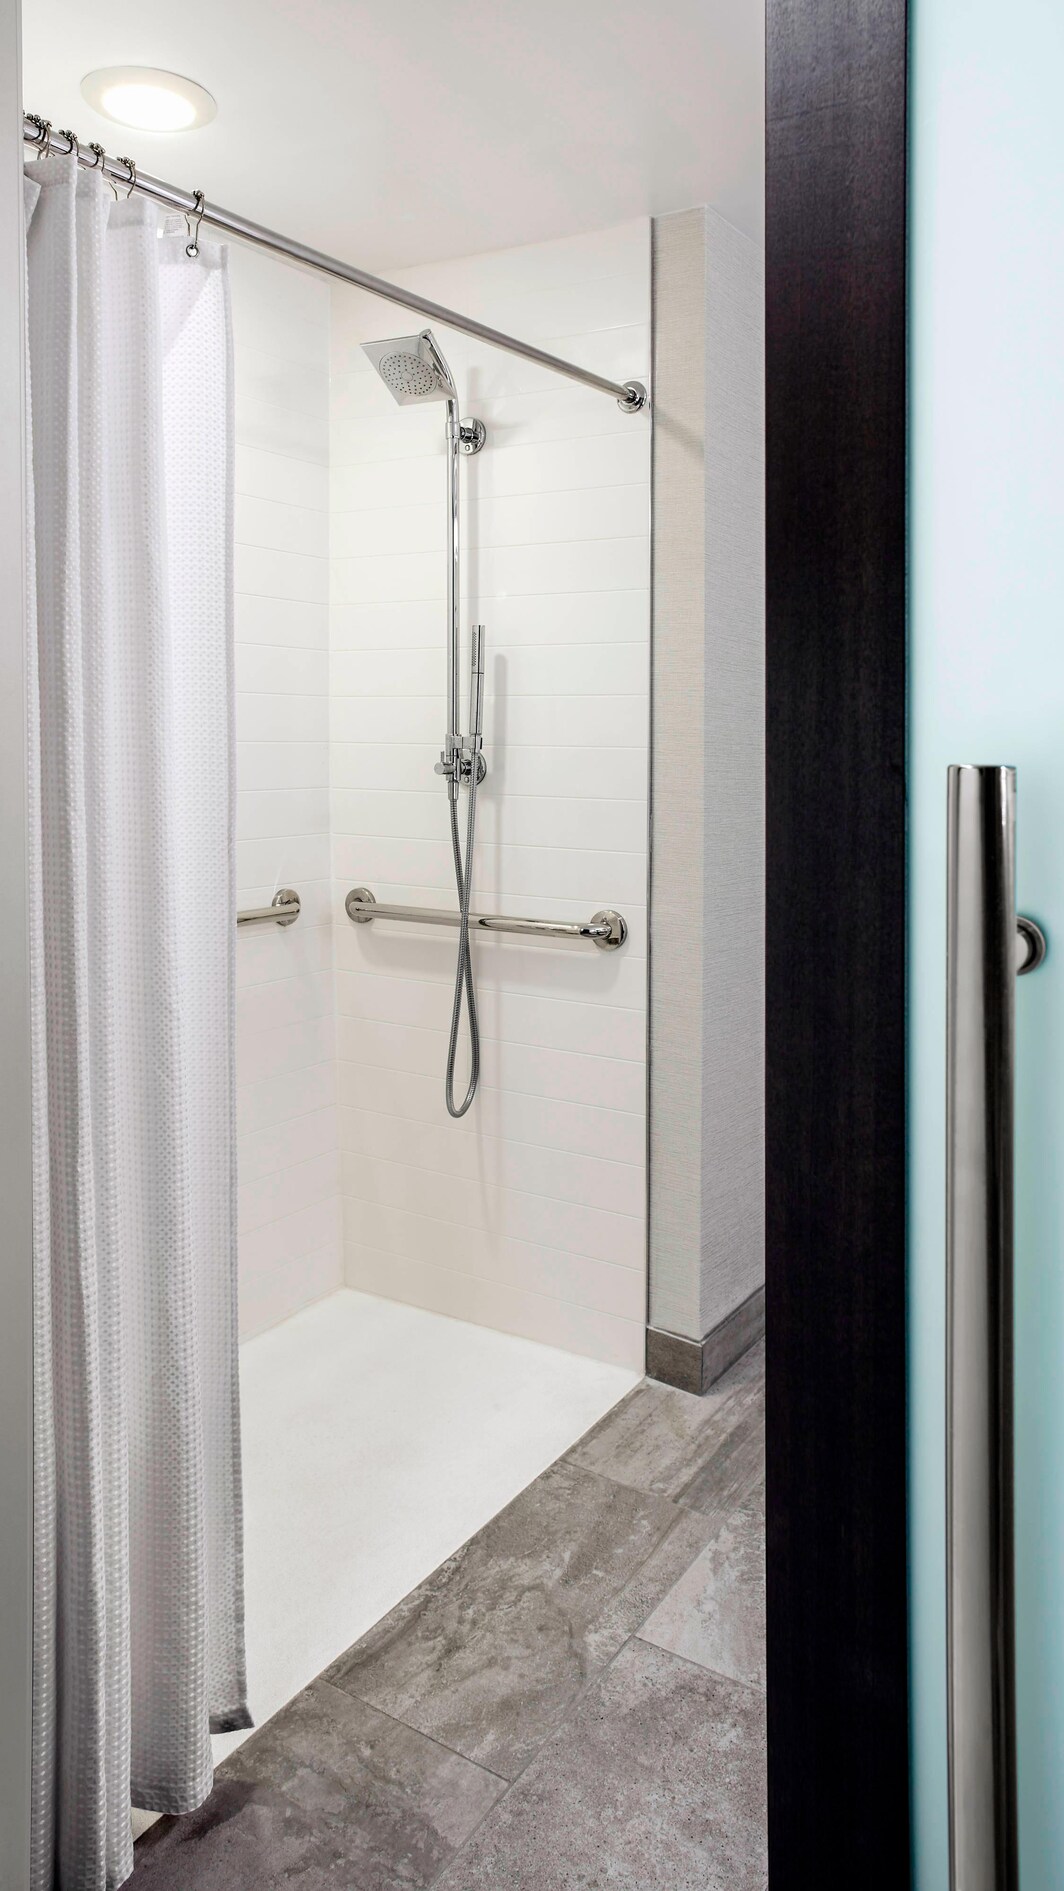 バリアフリー客室バスルーム - 車椅子用シャワー